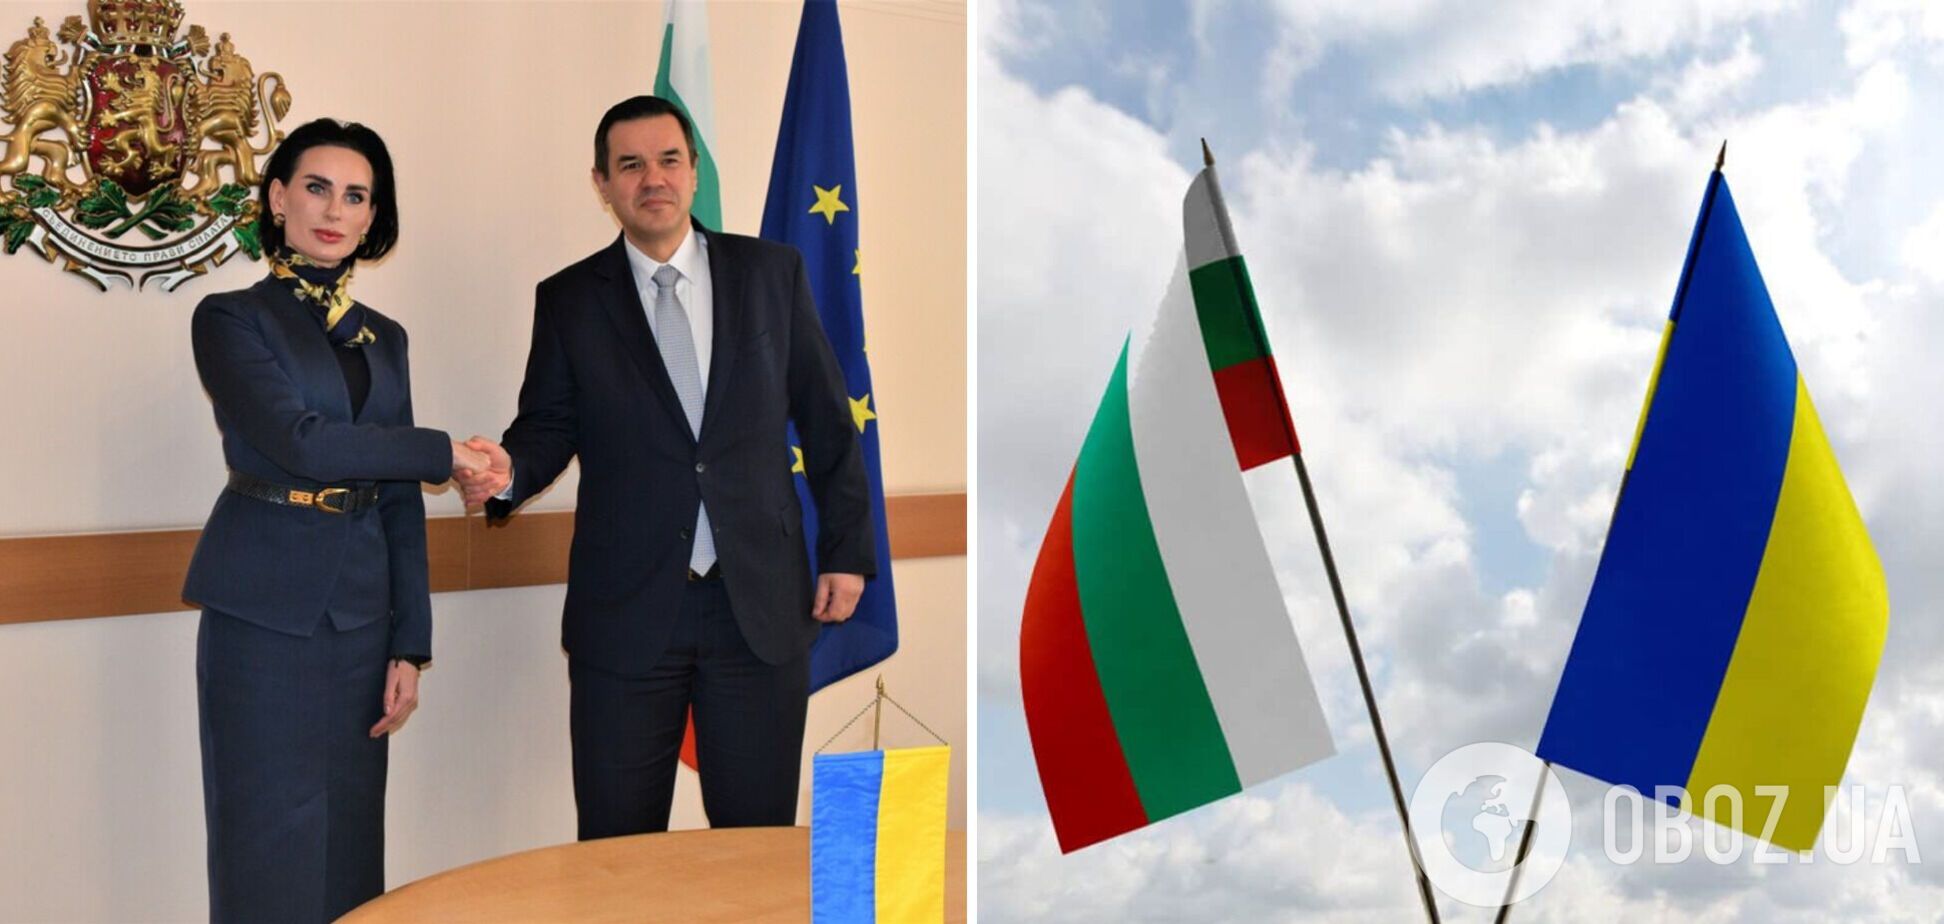 Болгария планирует увеличить импорт зерна из Украины и поможет в послевоенном восстановлении, – глава минэкономики на встрече с послом Илащук